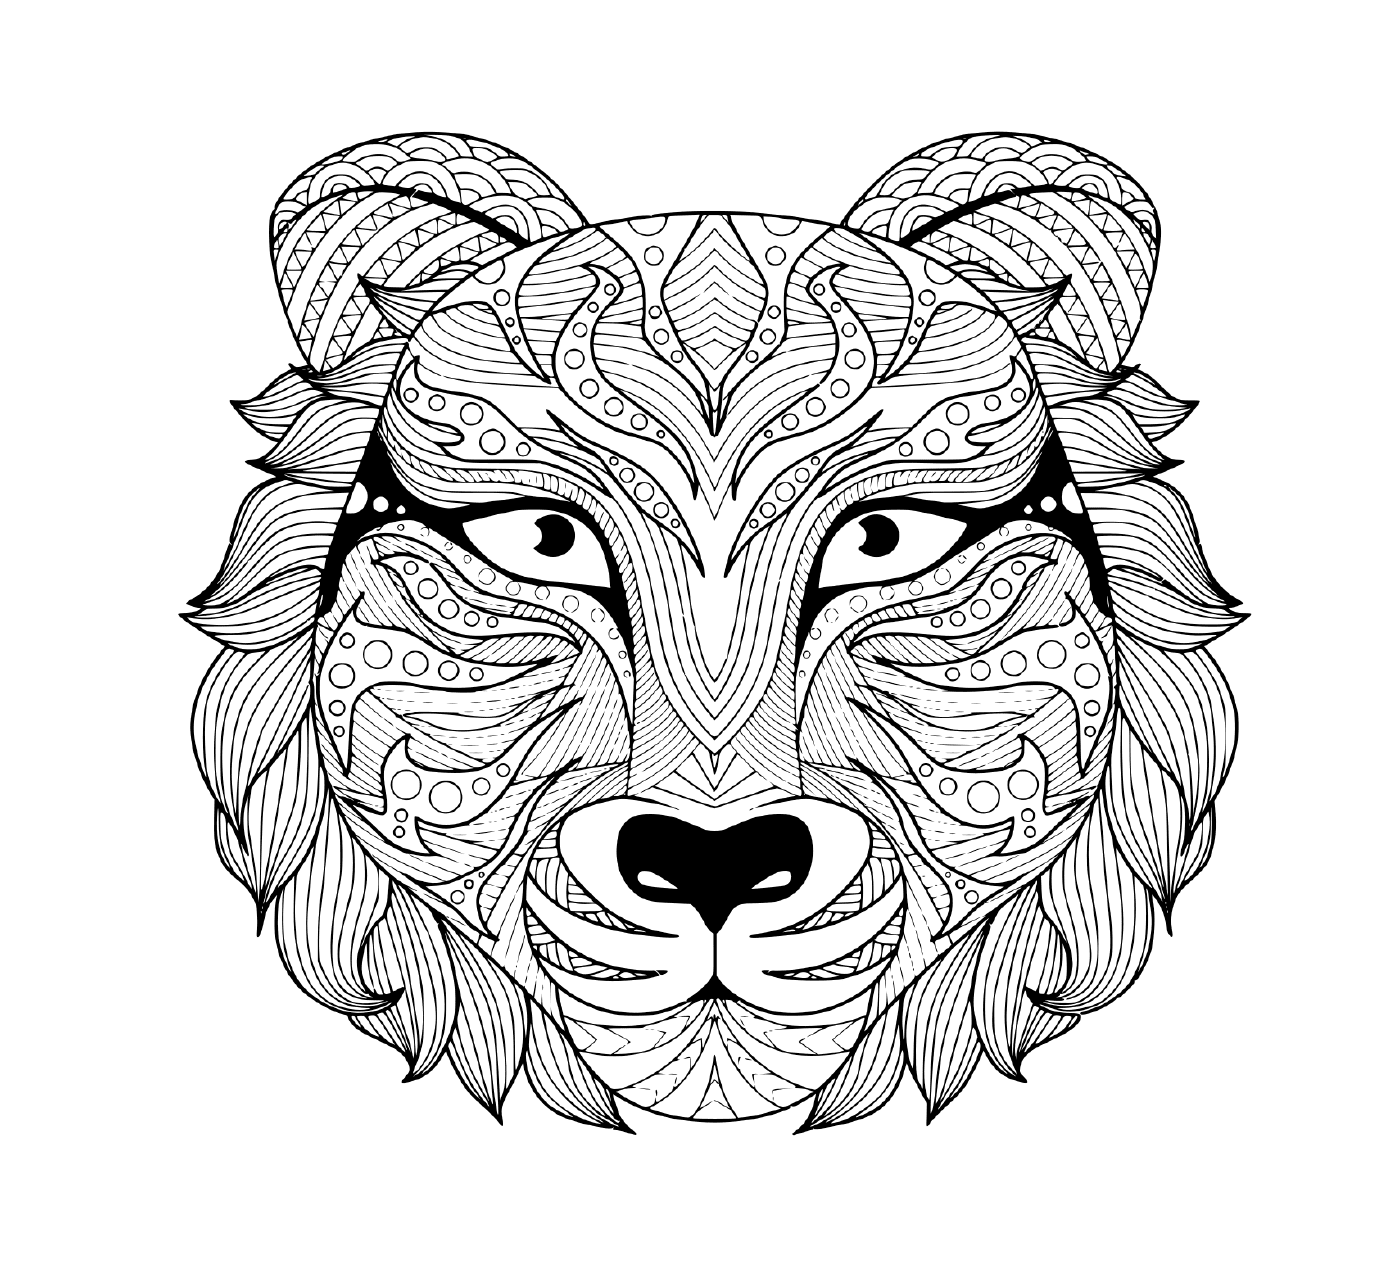  татуированный образ головы взрослого тигра с красочными глазами 